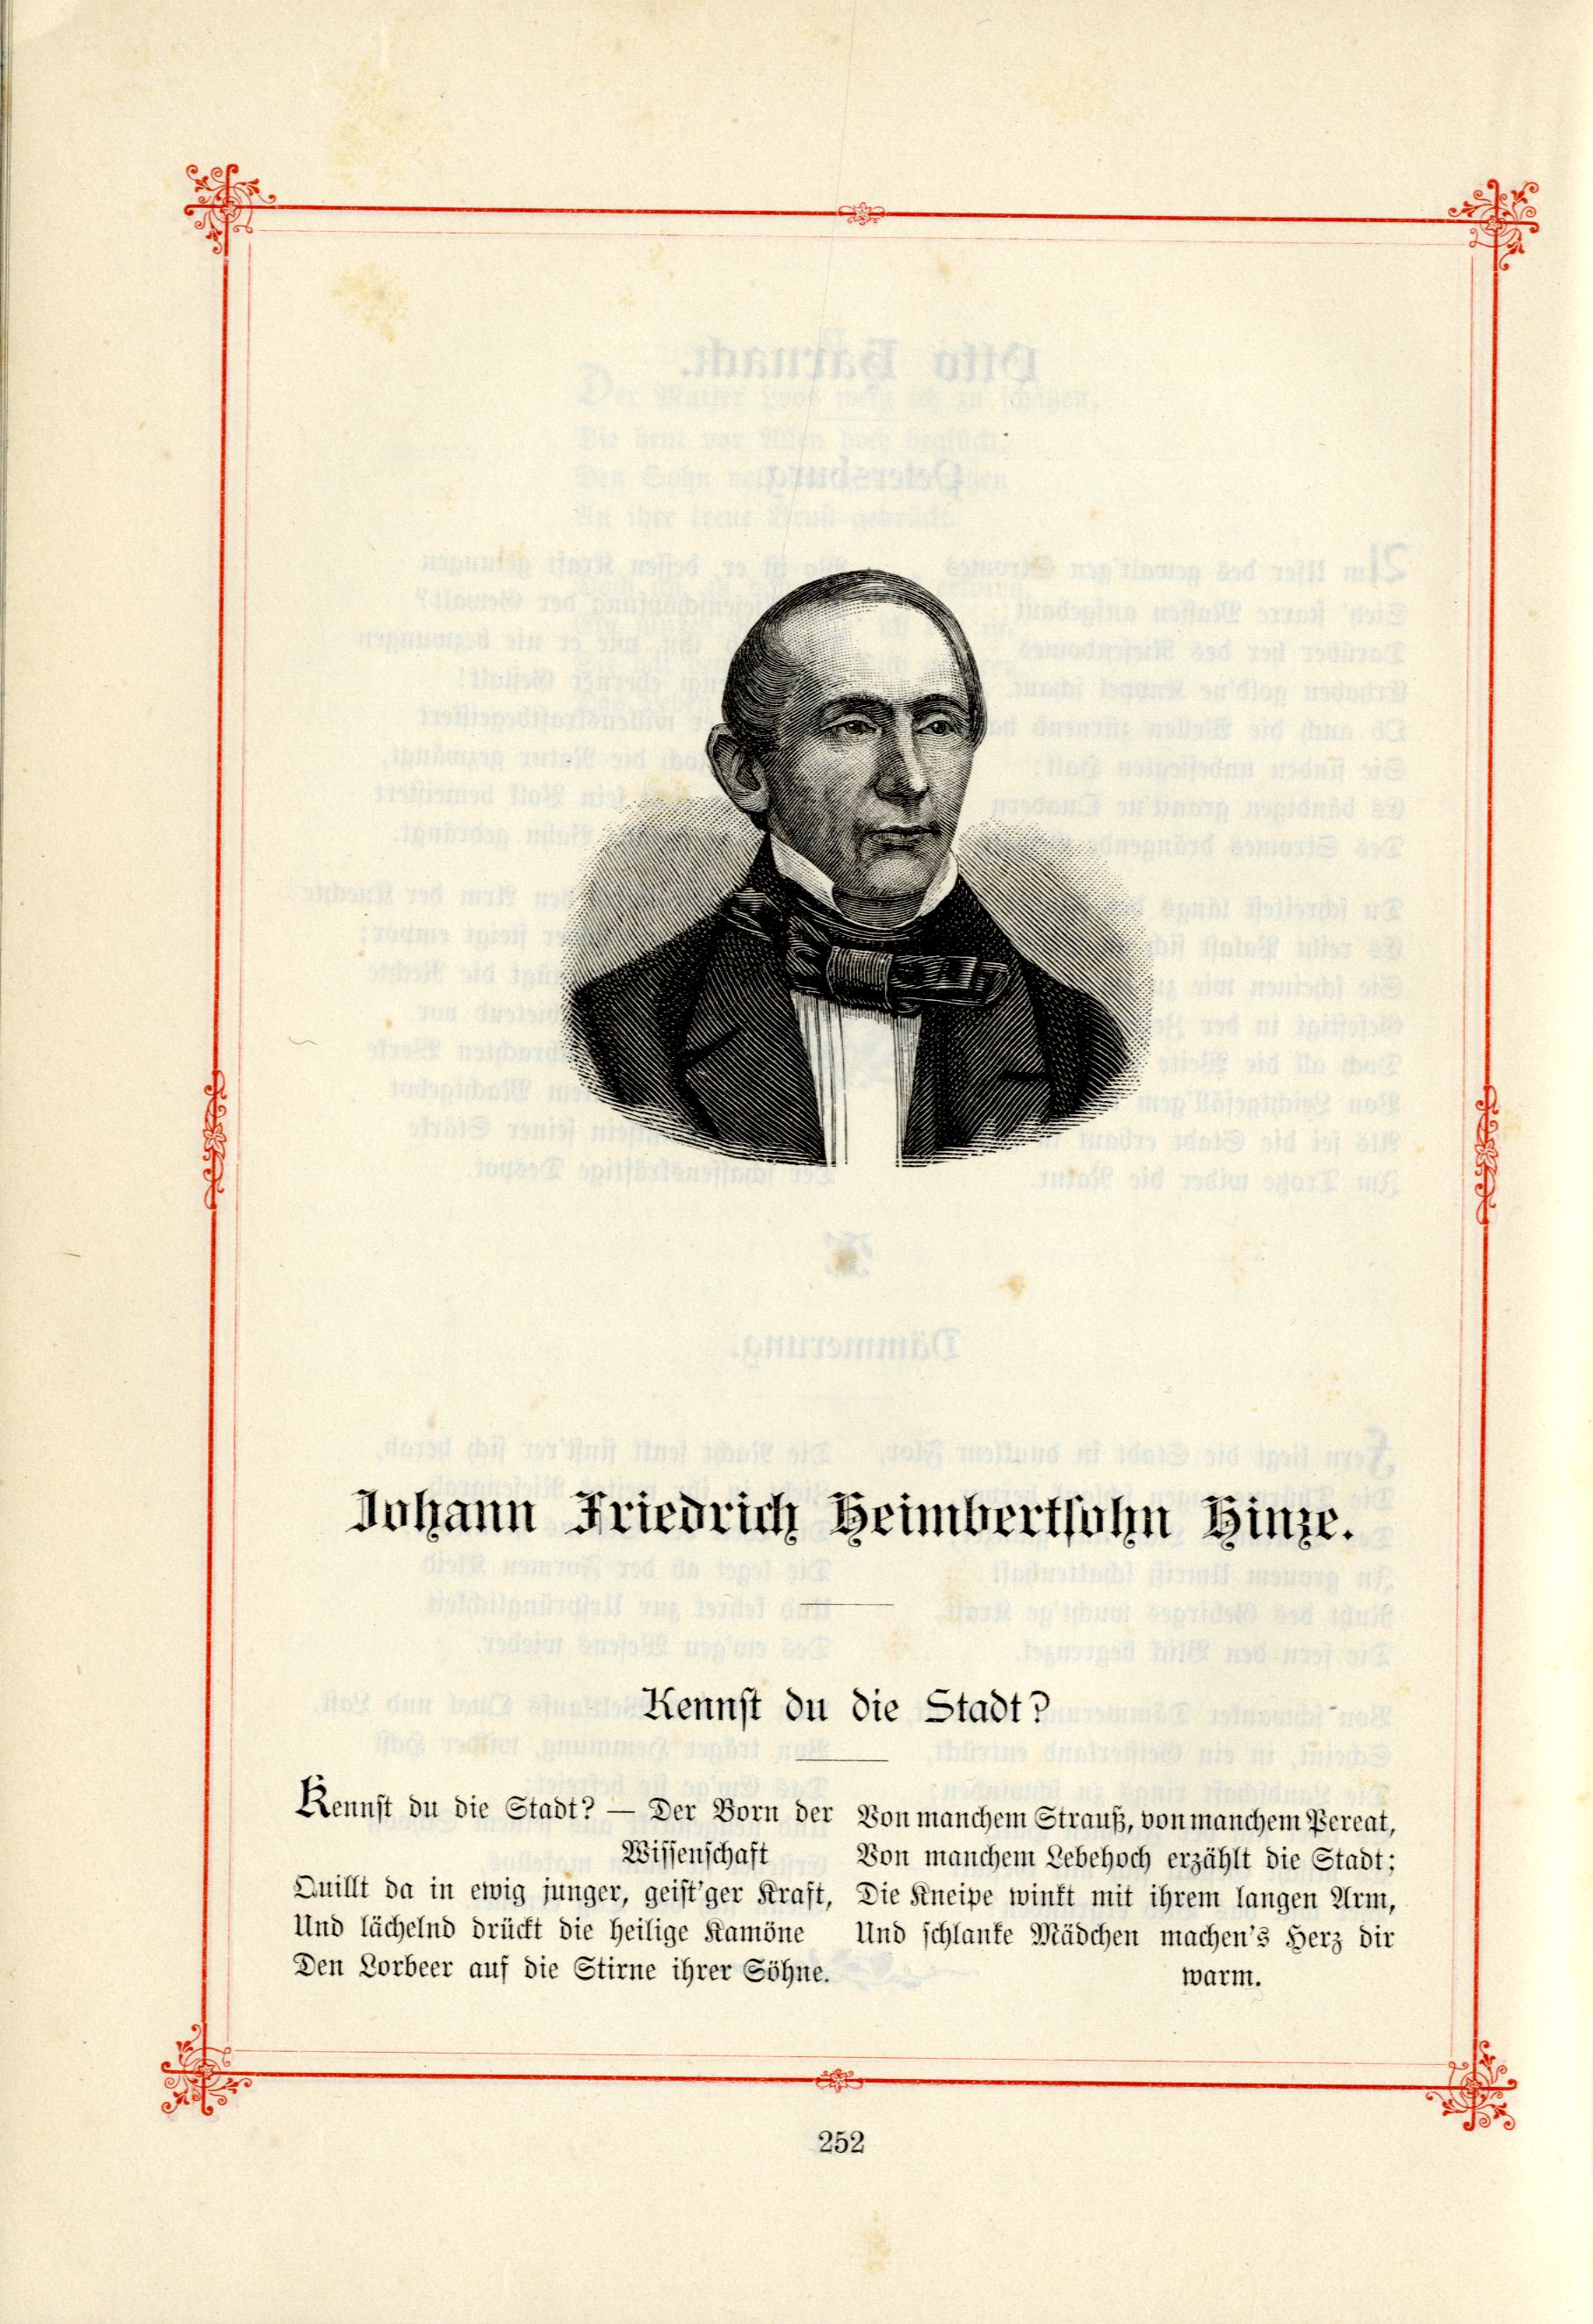 Das Baltische Dichterbuch (1895) | 298. (252) Main body of text